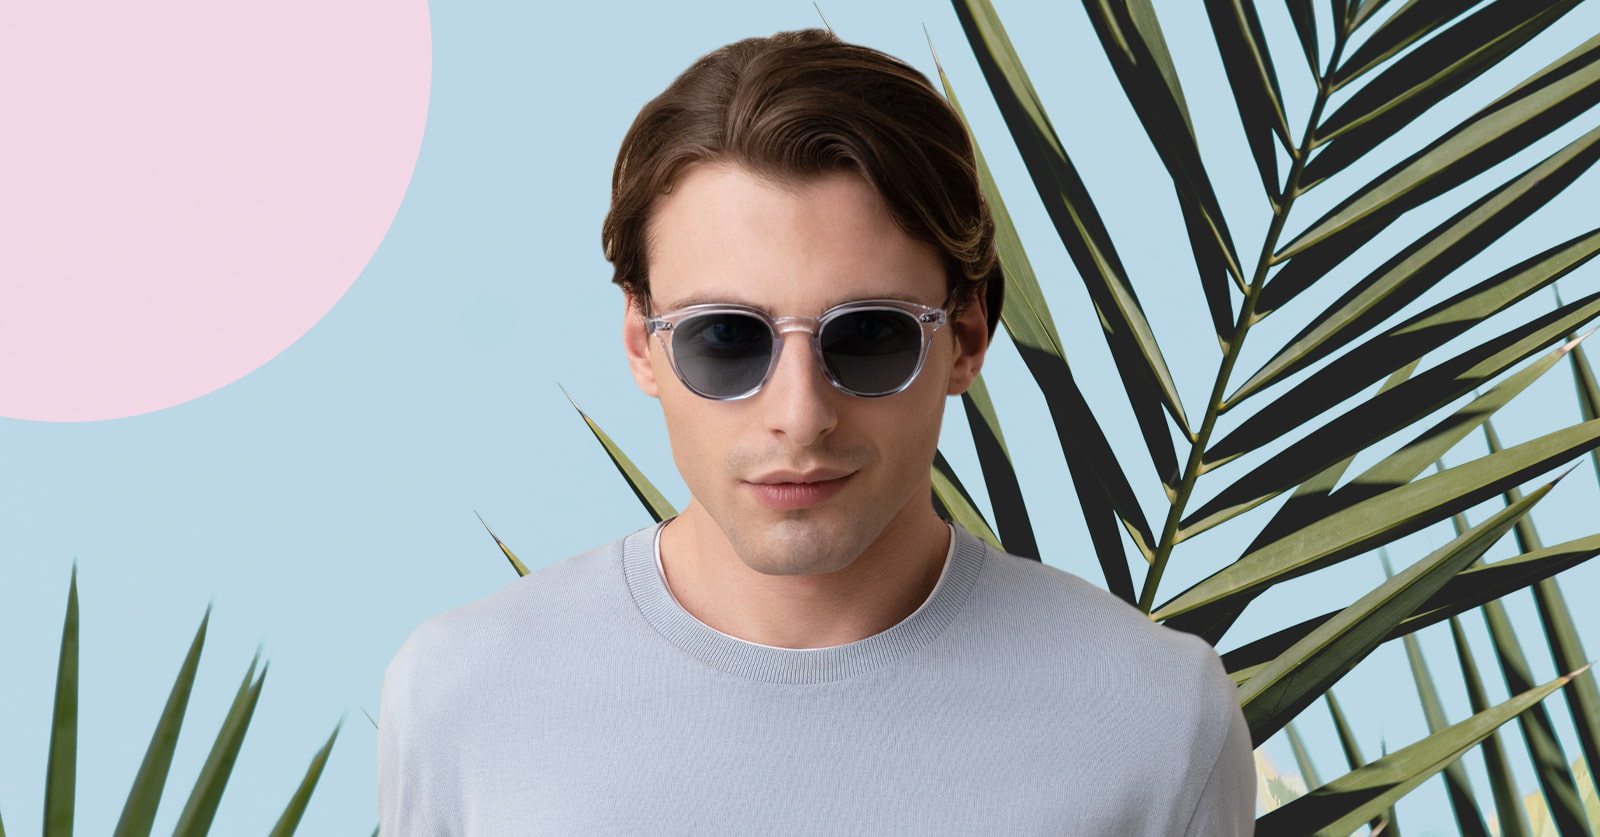 The best sunglasses for men in 2022 (so far)